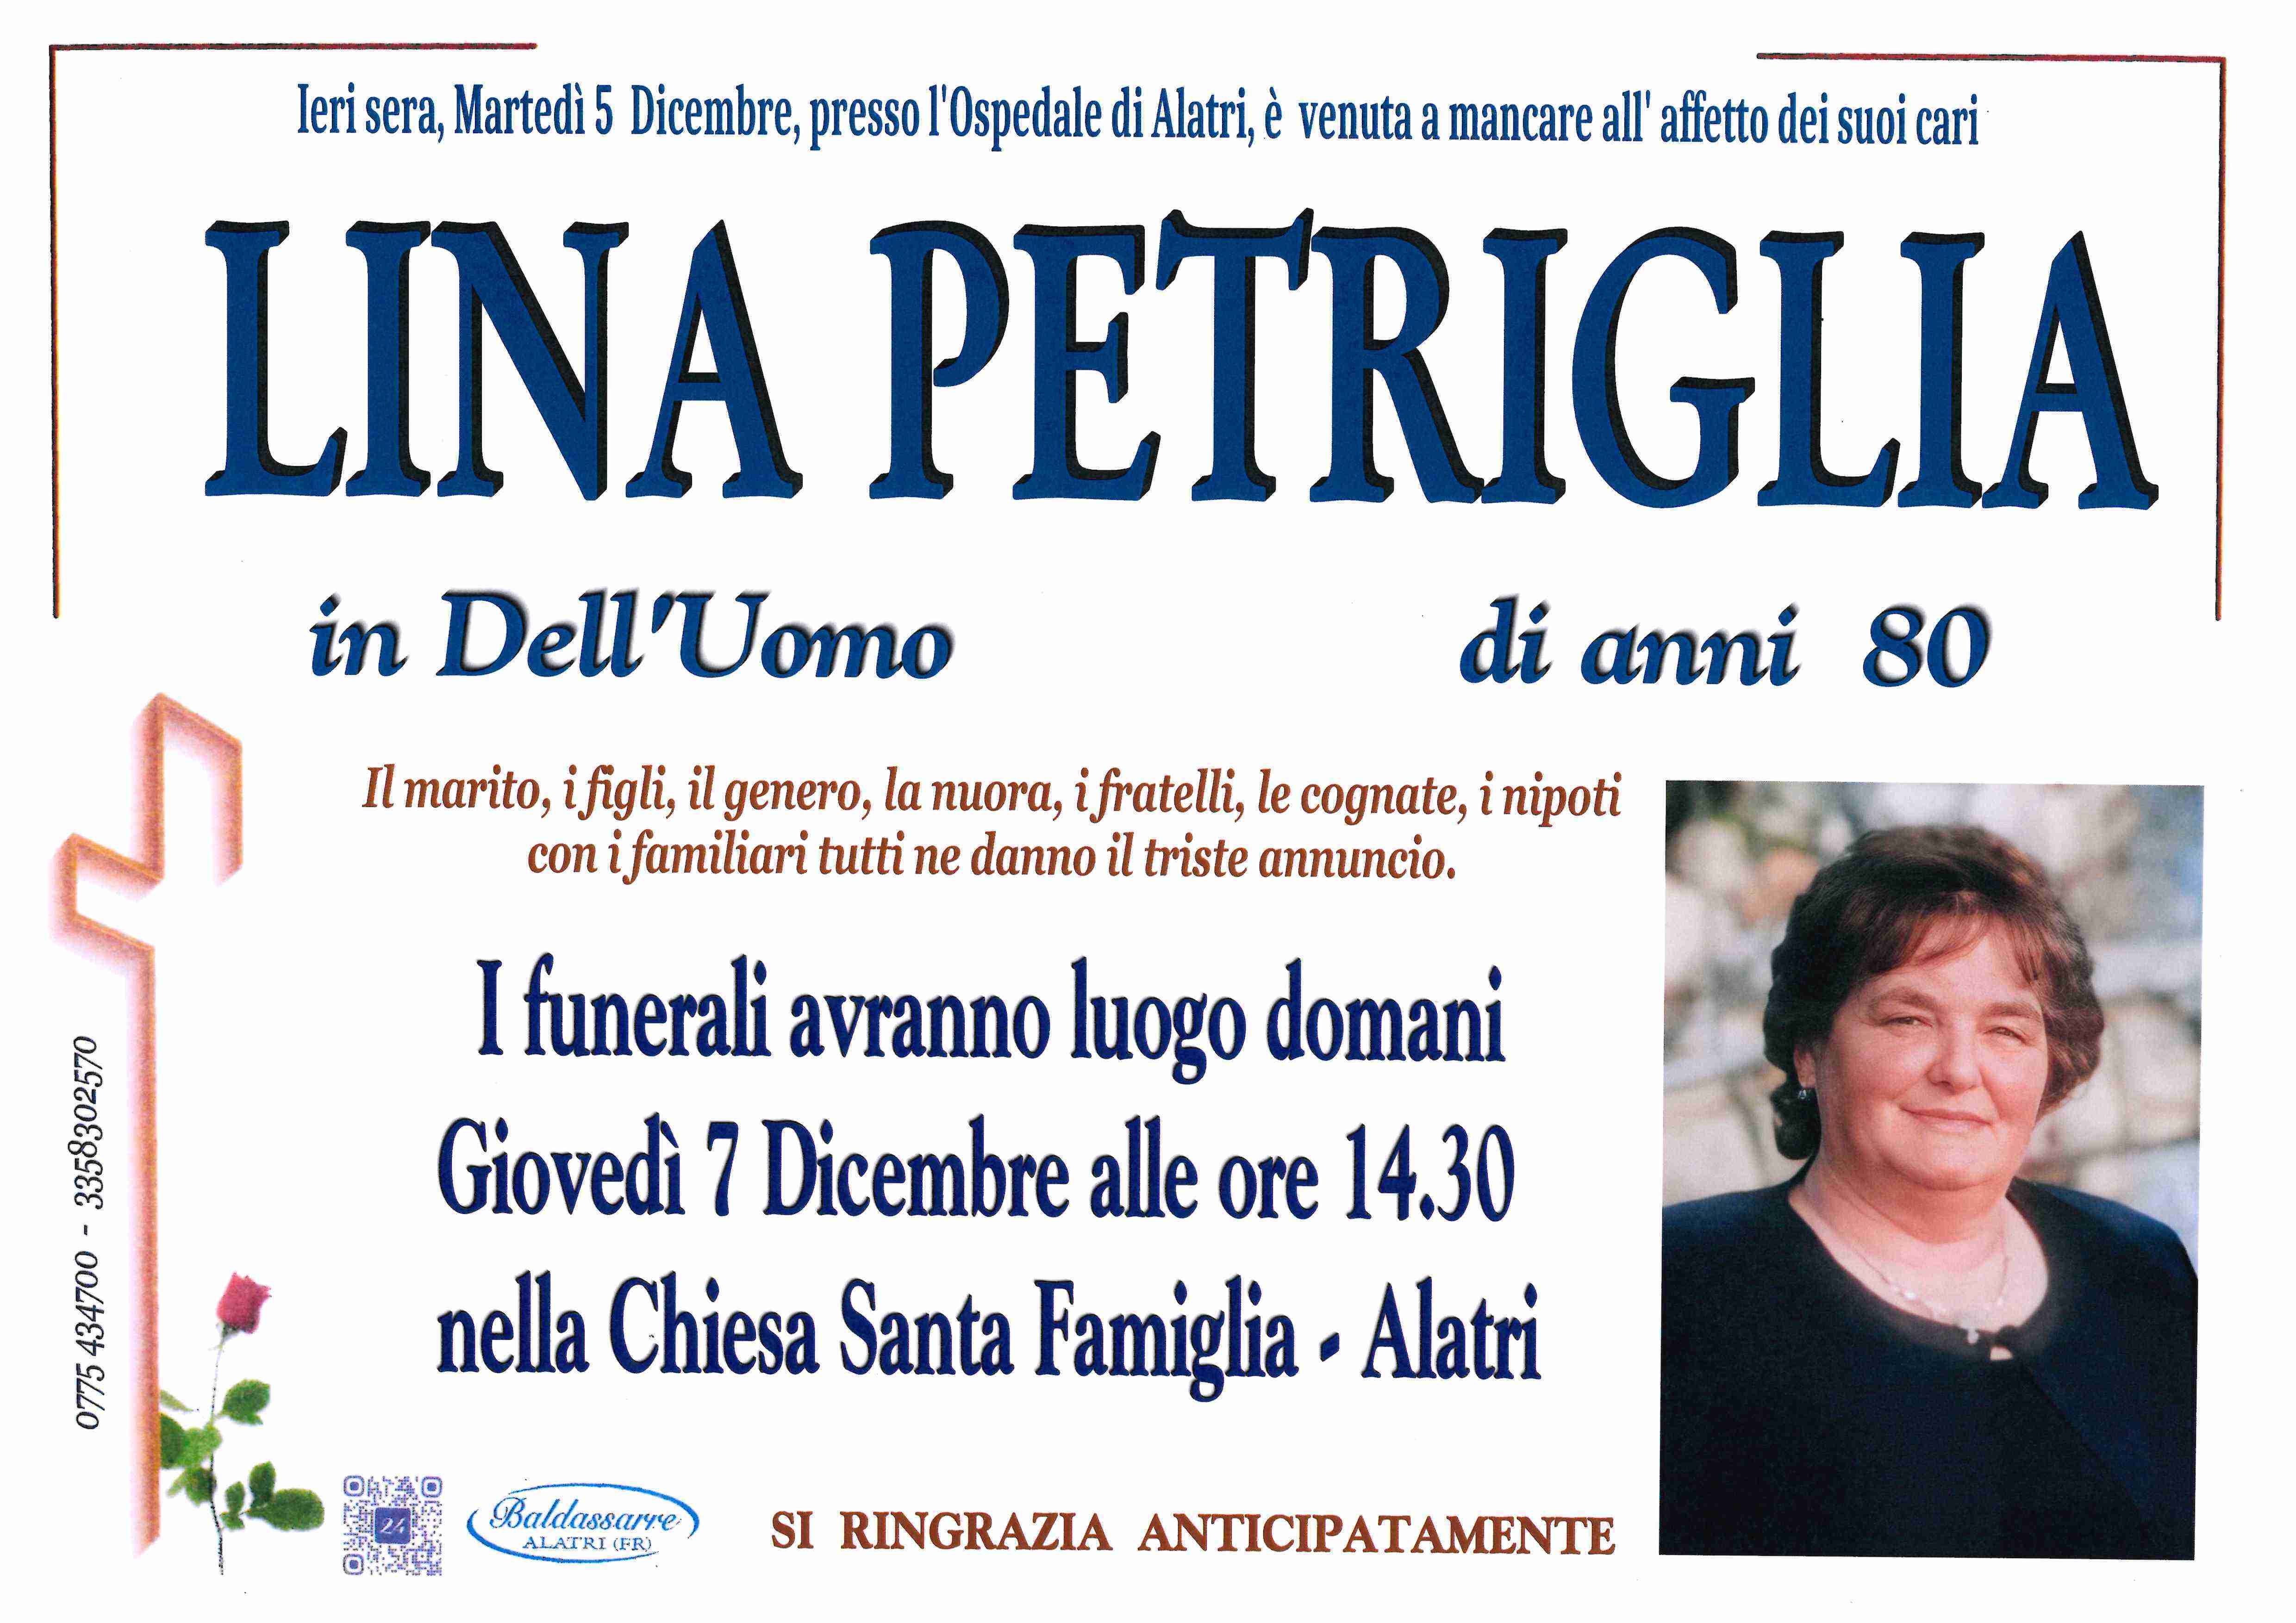 Lina Petriglia